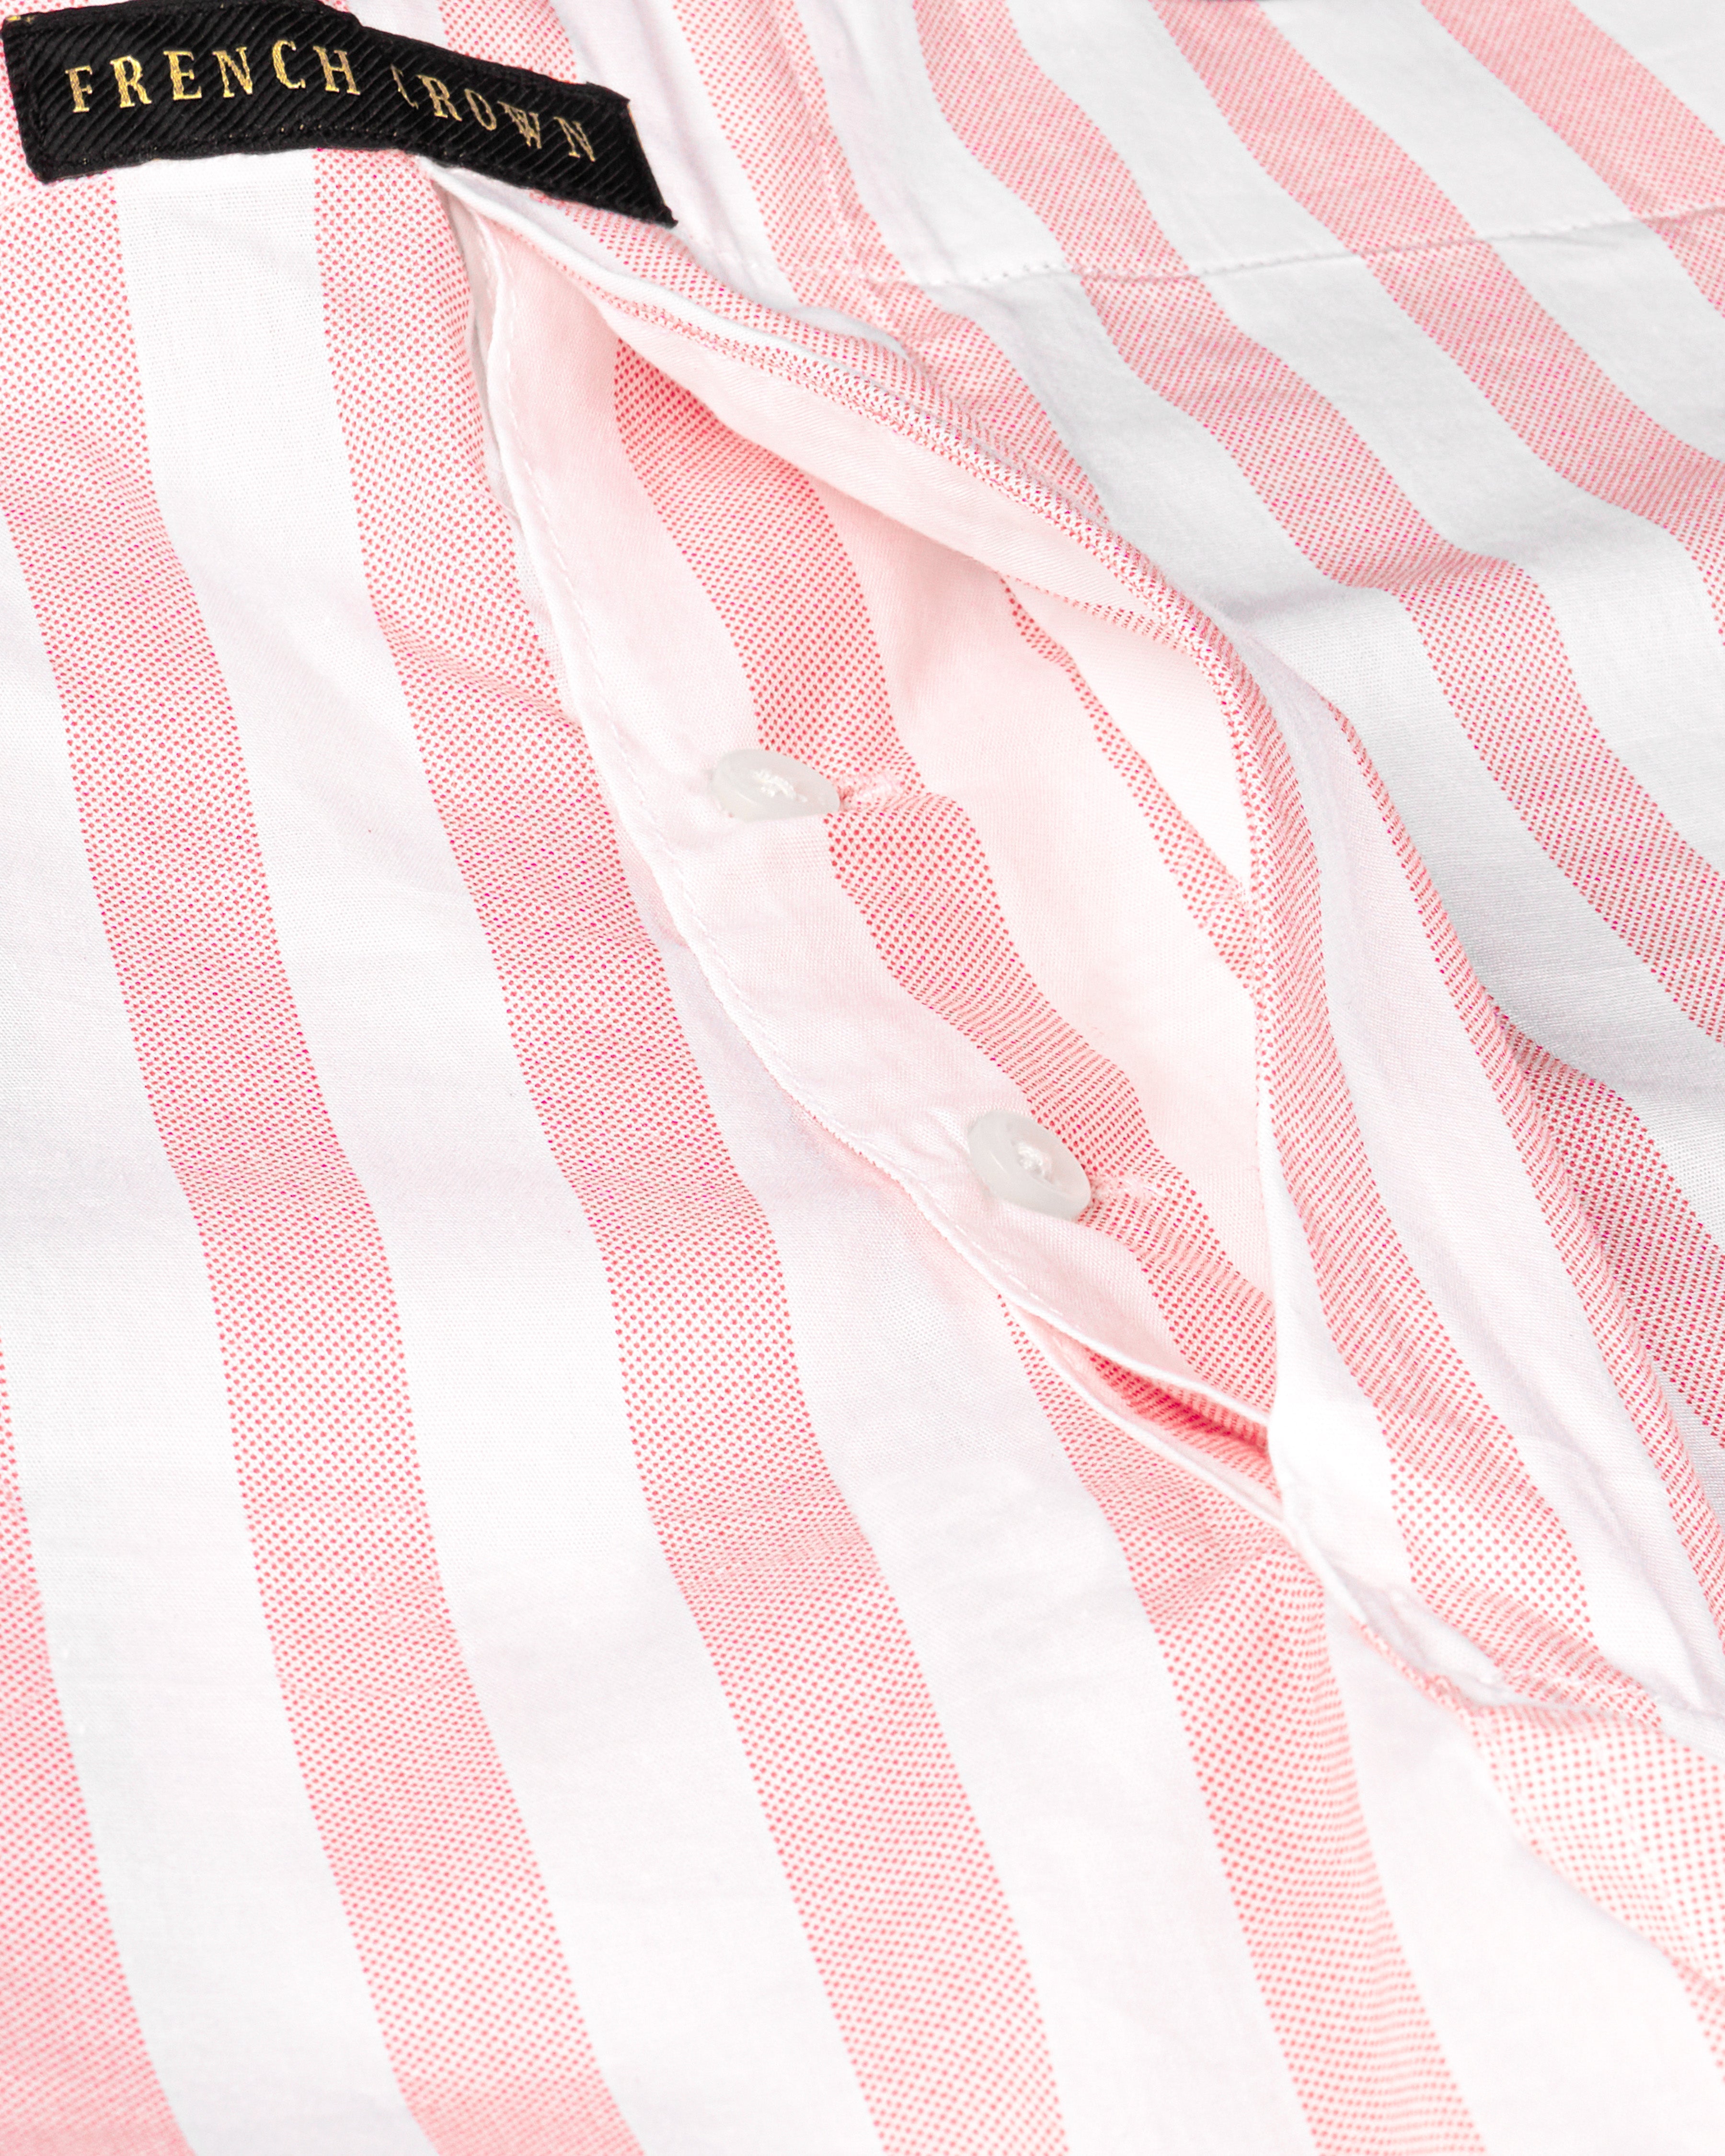 Azalea Pink with White Striped Premium Cotton Boxers BX462-28, BX462-30, BX462-32, BX462-34, BX462-36, BX462-38, BX462-40, BX462-42, BX462-44